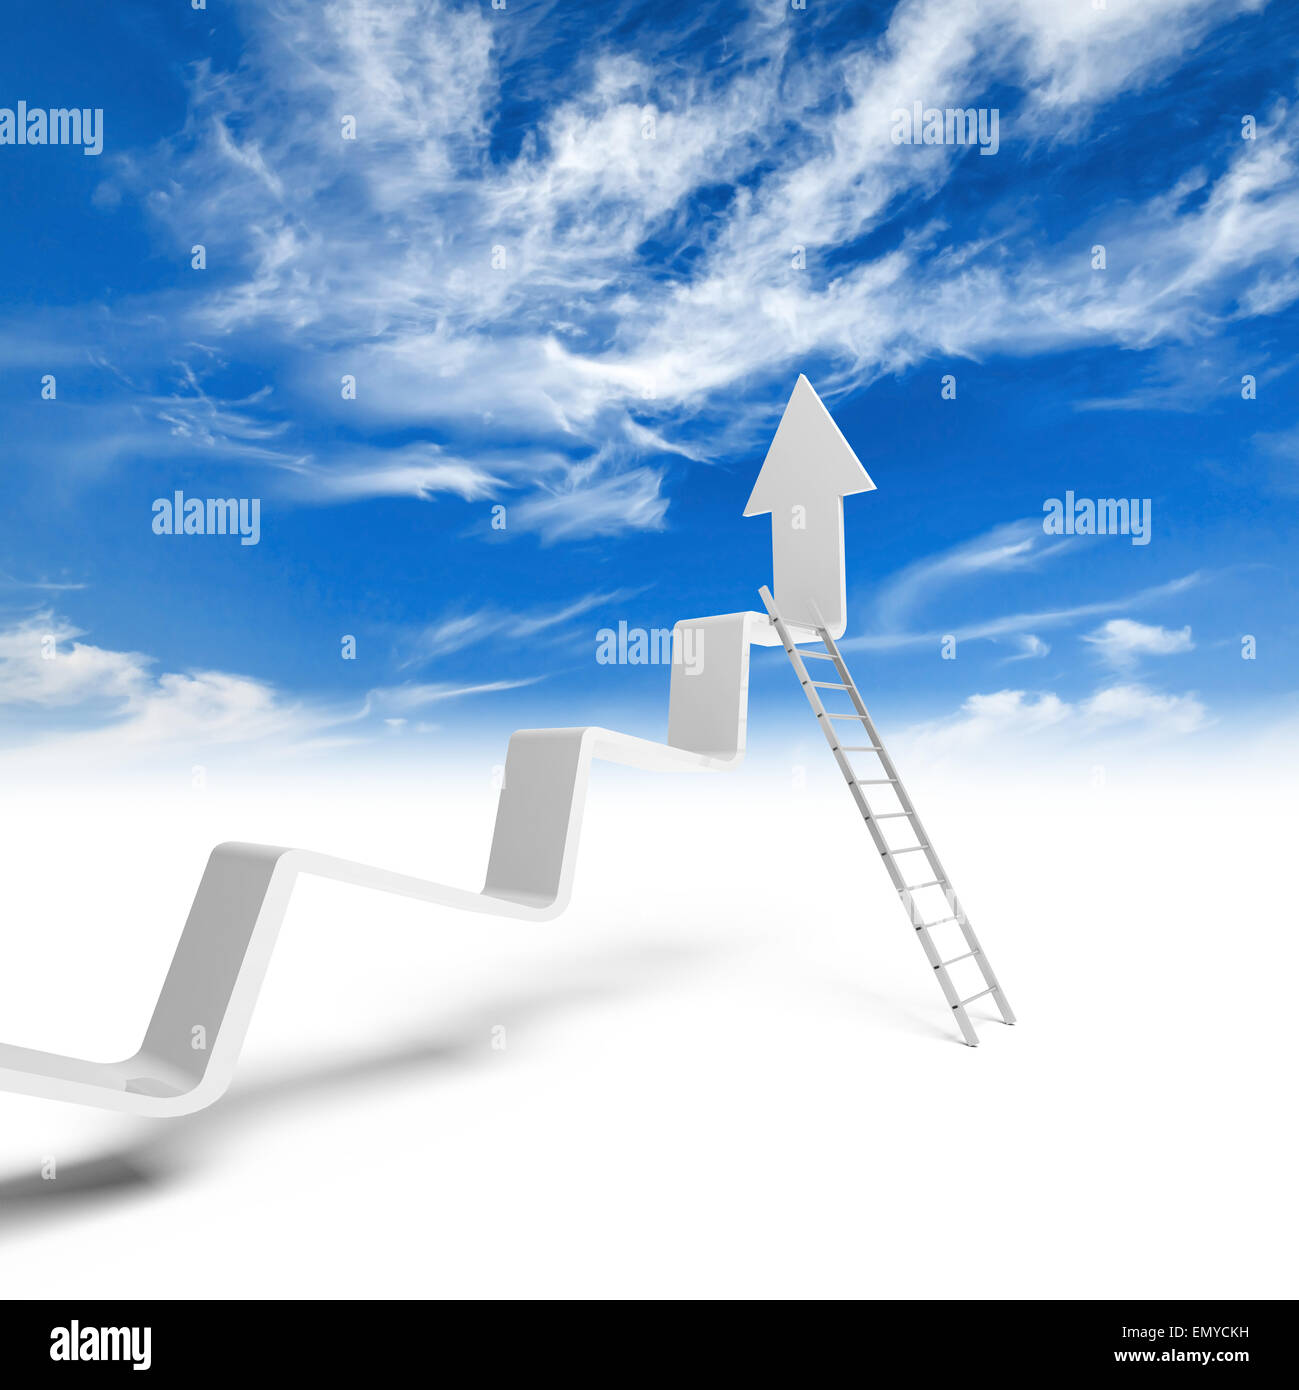 Ligne de tendance cassée avec la flèche sur la fin et l'échelle en métal s'inclinent, 3d illustration avec ciel nuageux fond photo Banque D'Images